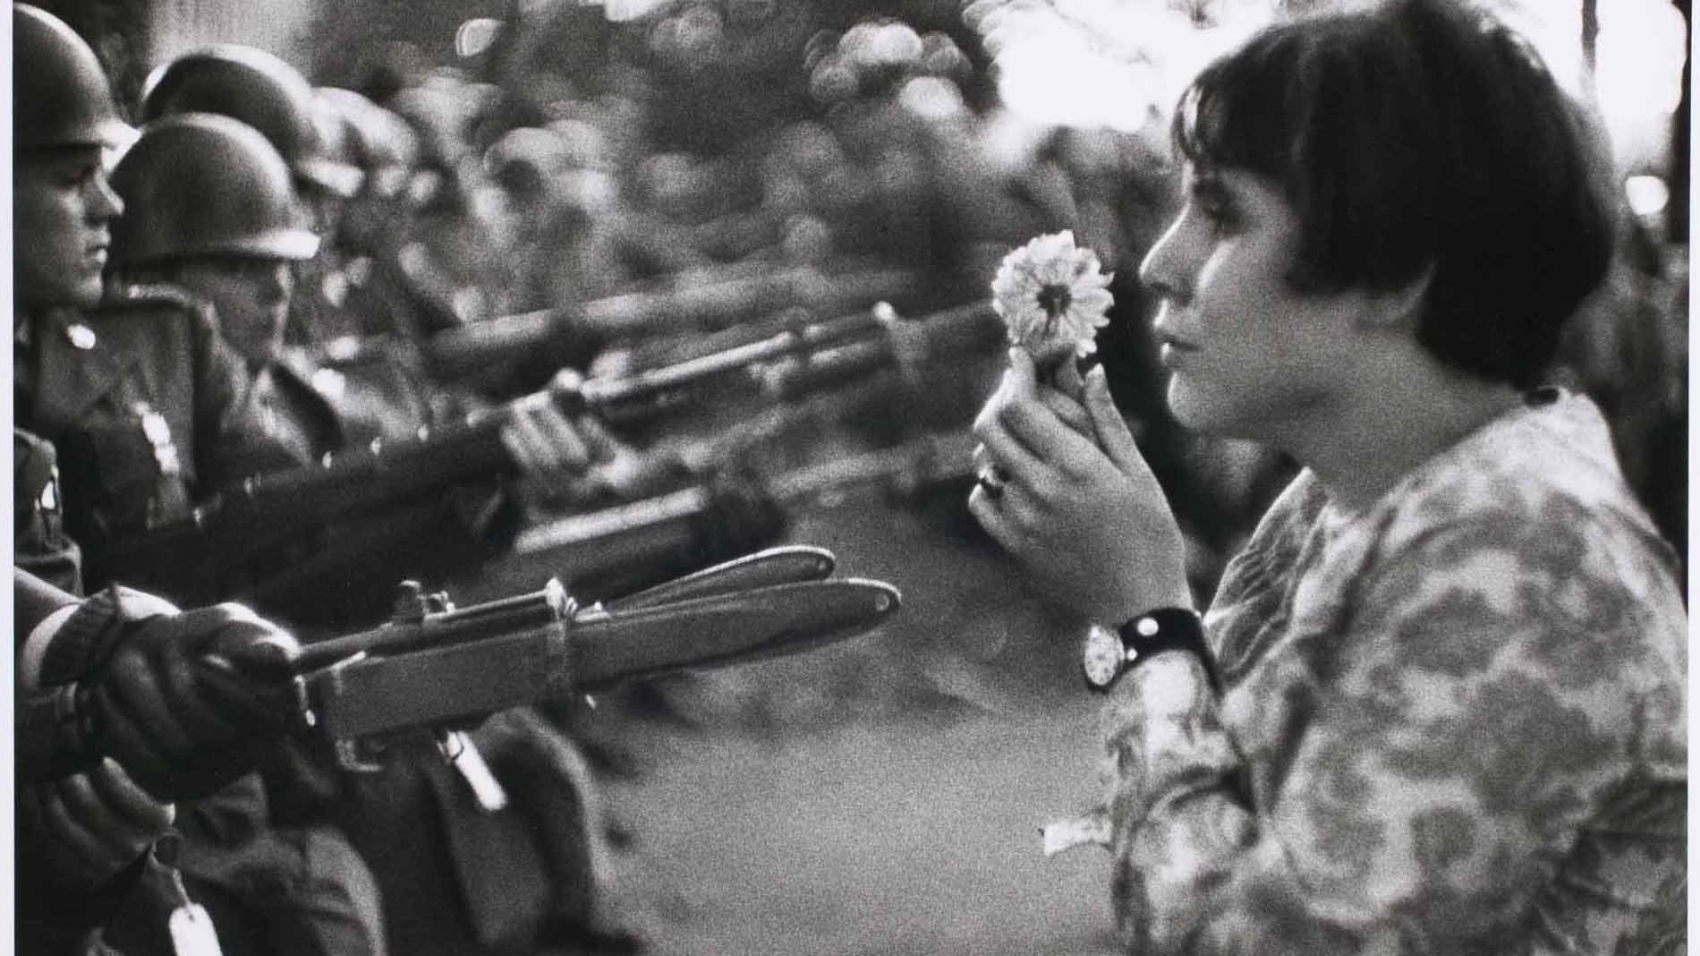 Manifestation contre la guerre au Vietnam à Washington, 1967.
